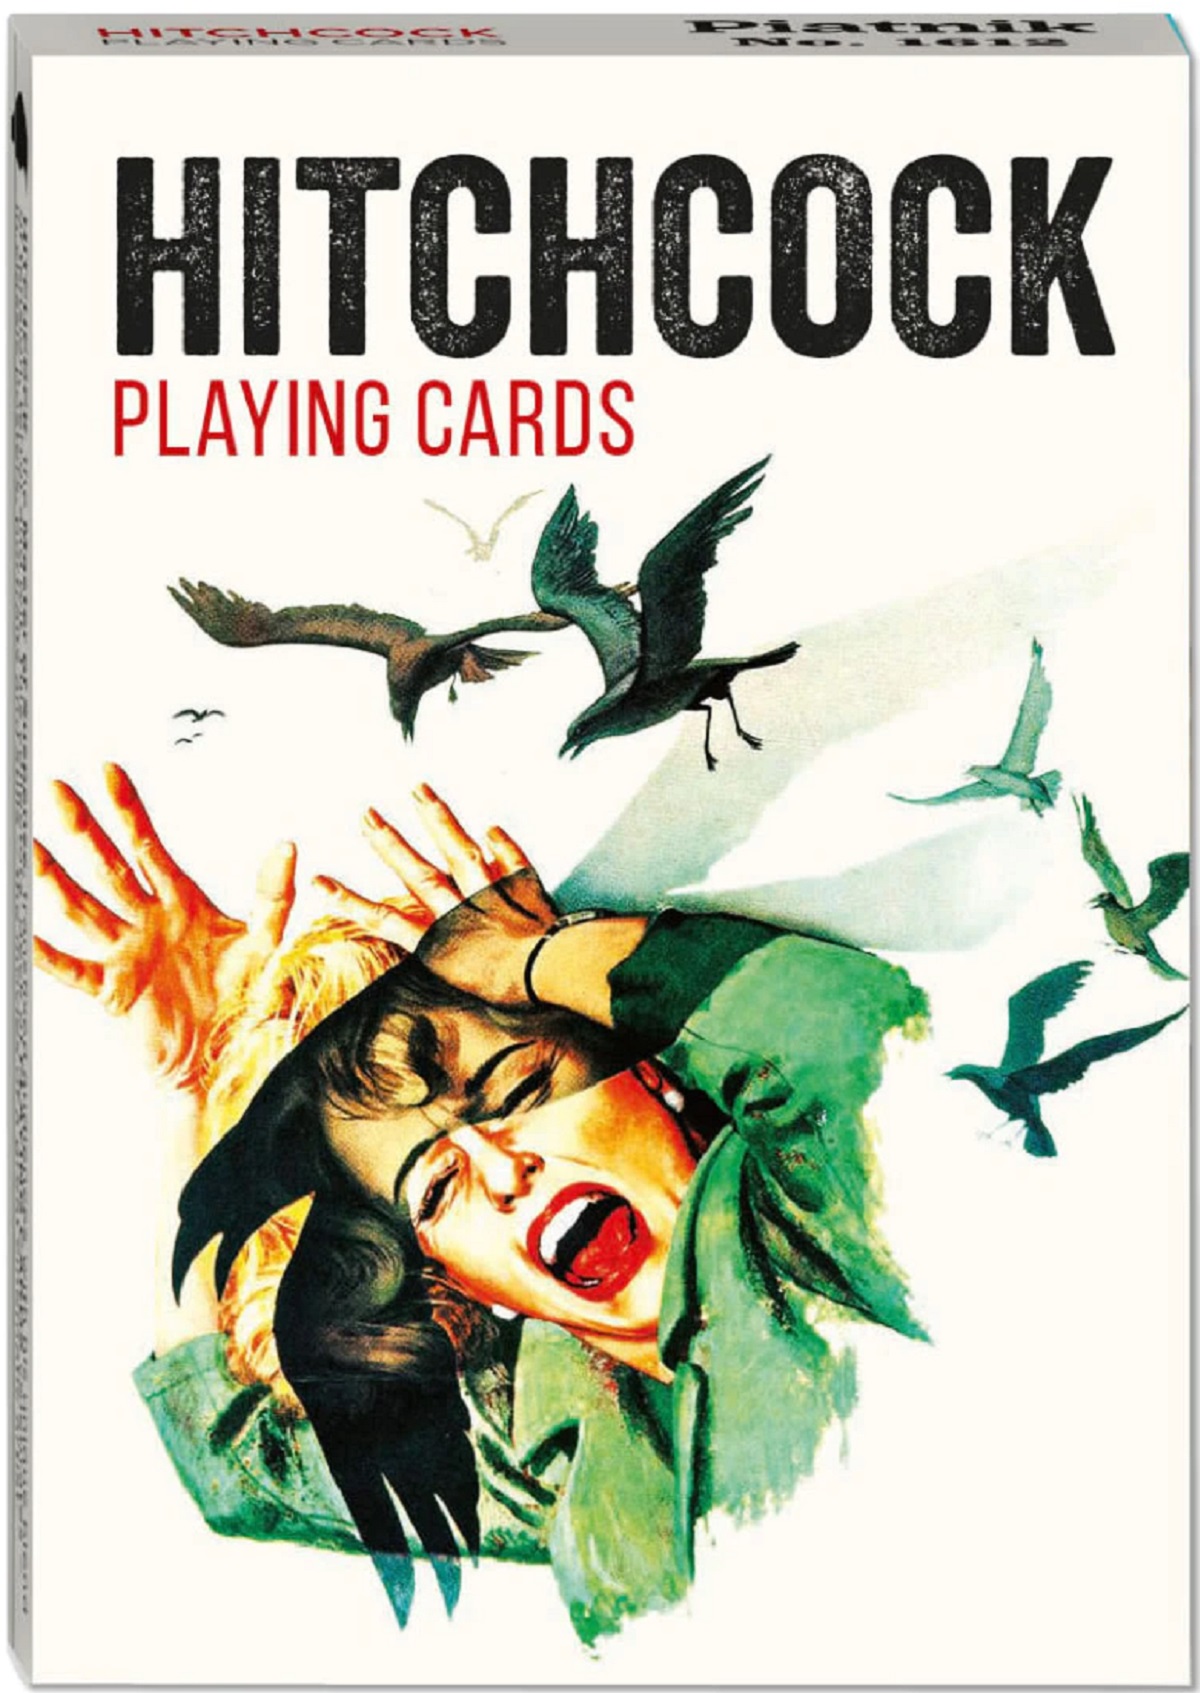 Carti de joc: Hitchcock